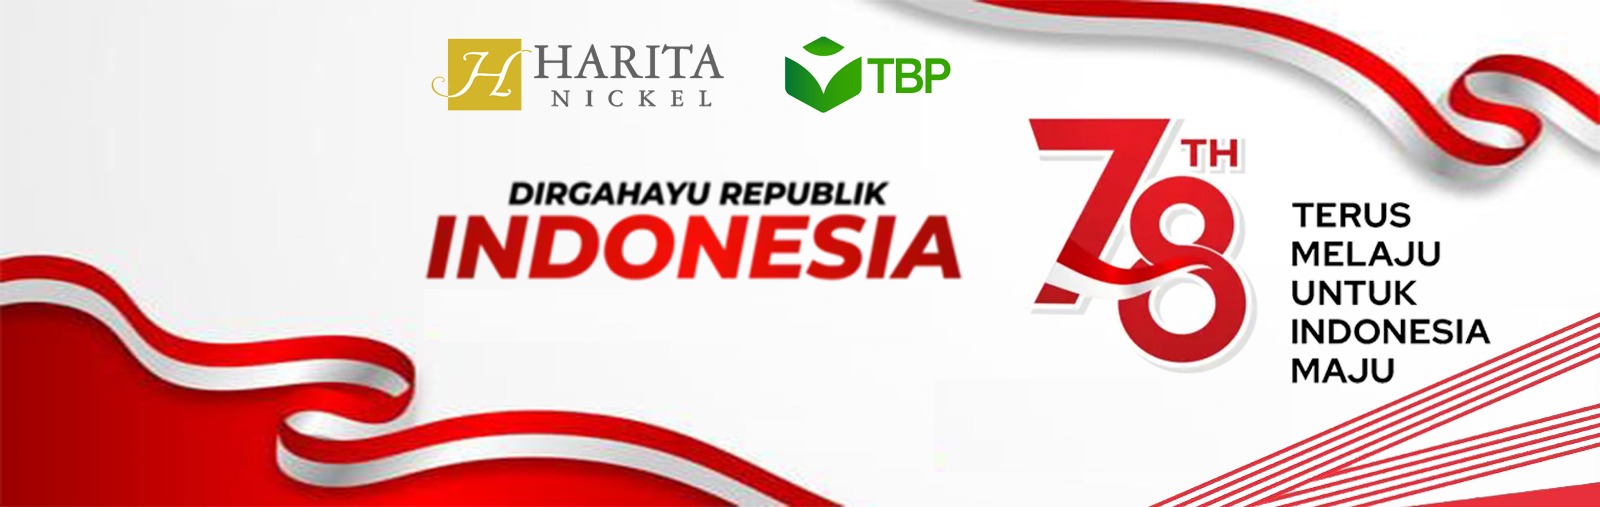 Ucapan Selamat Hari Raya Kemerdekaan Indonesia Ke-78 Harita Nickel2